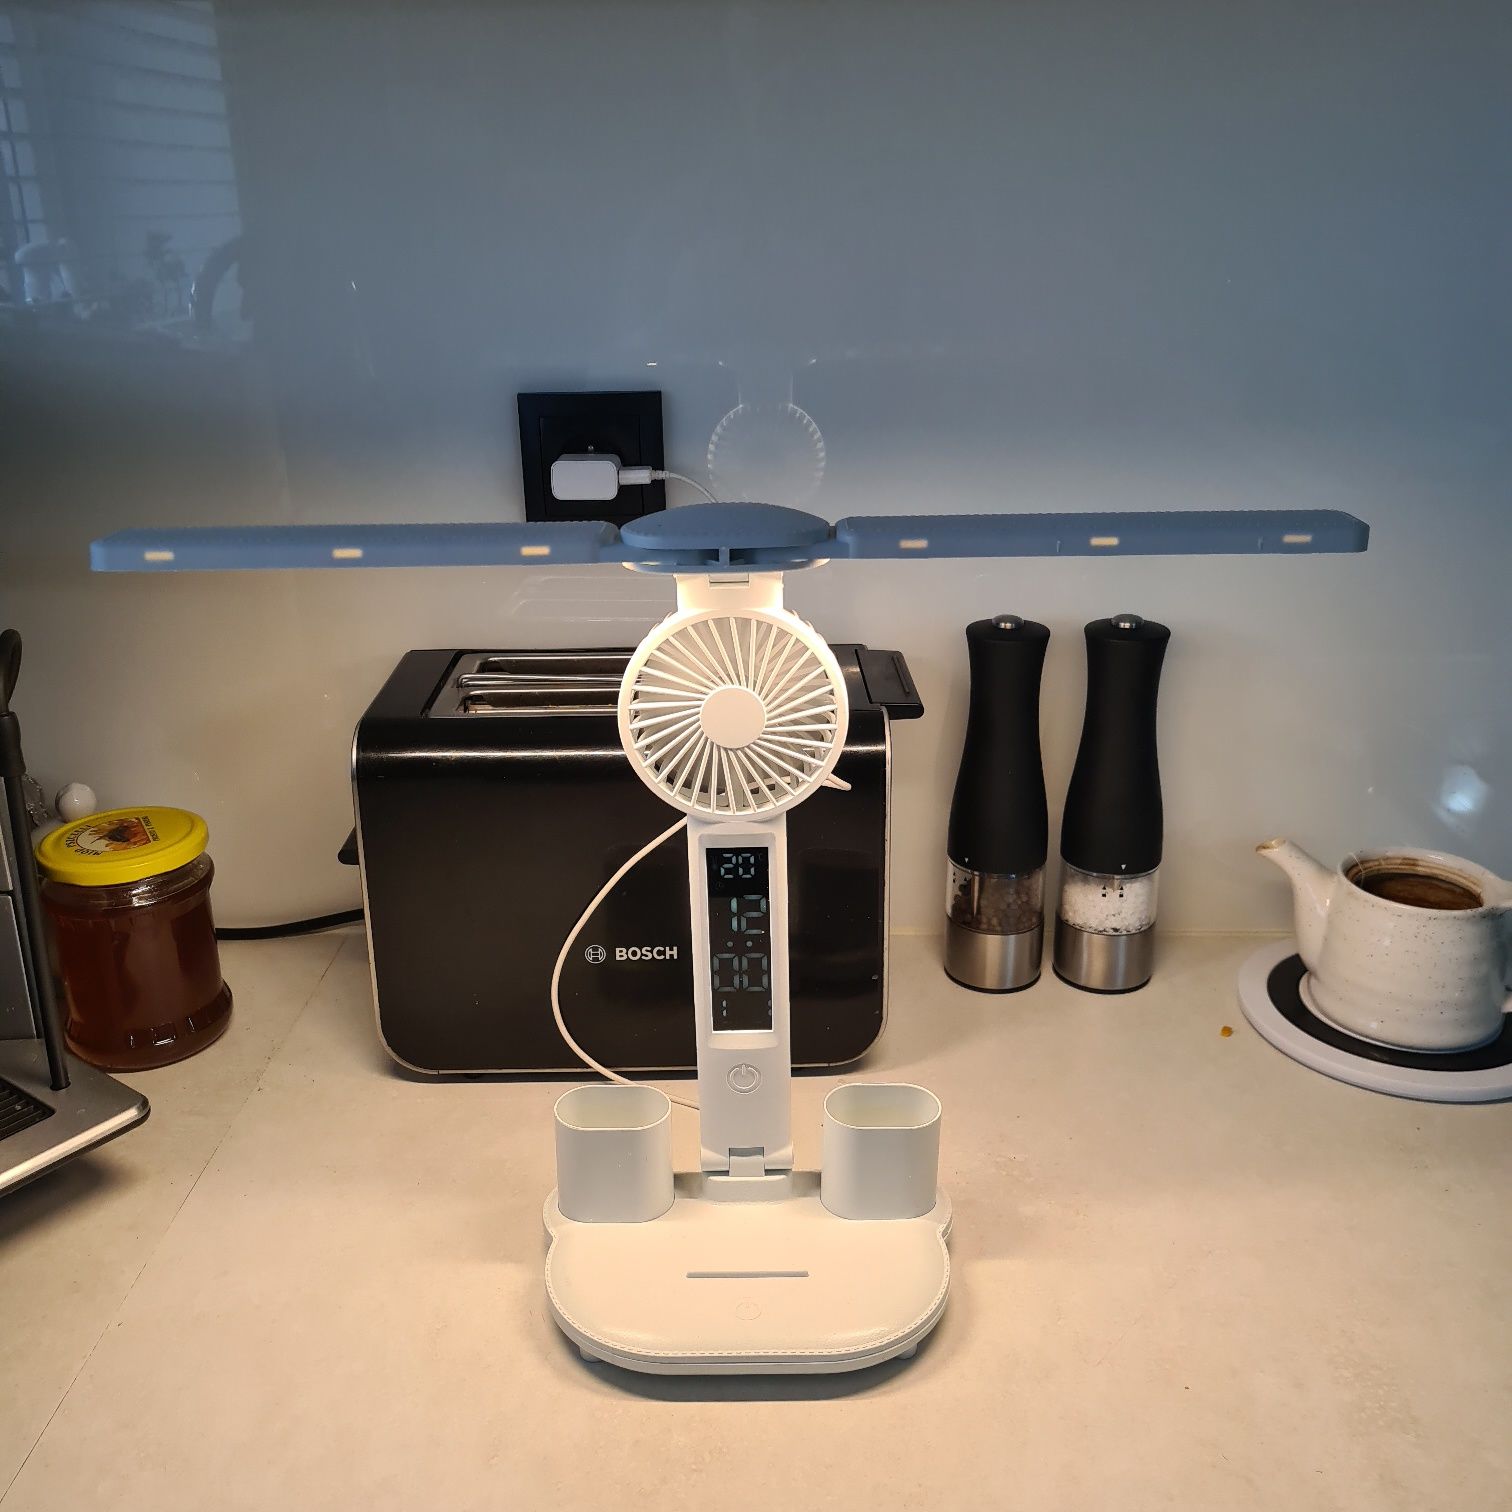 Lampka składana z zegarkiem